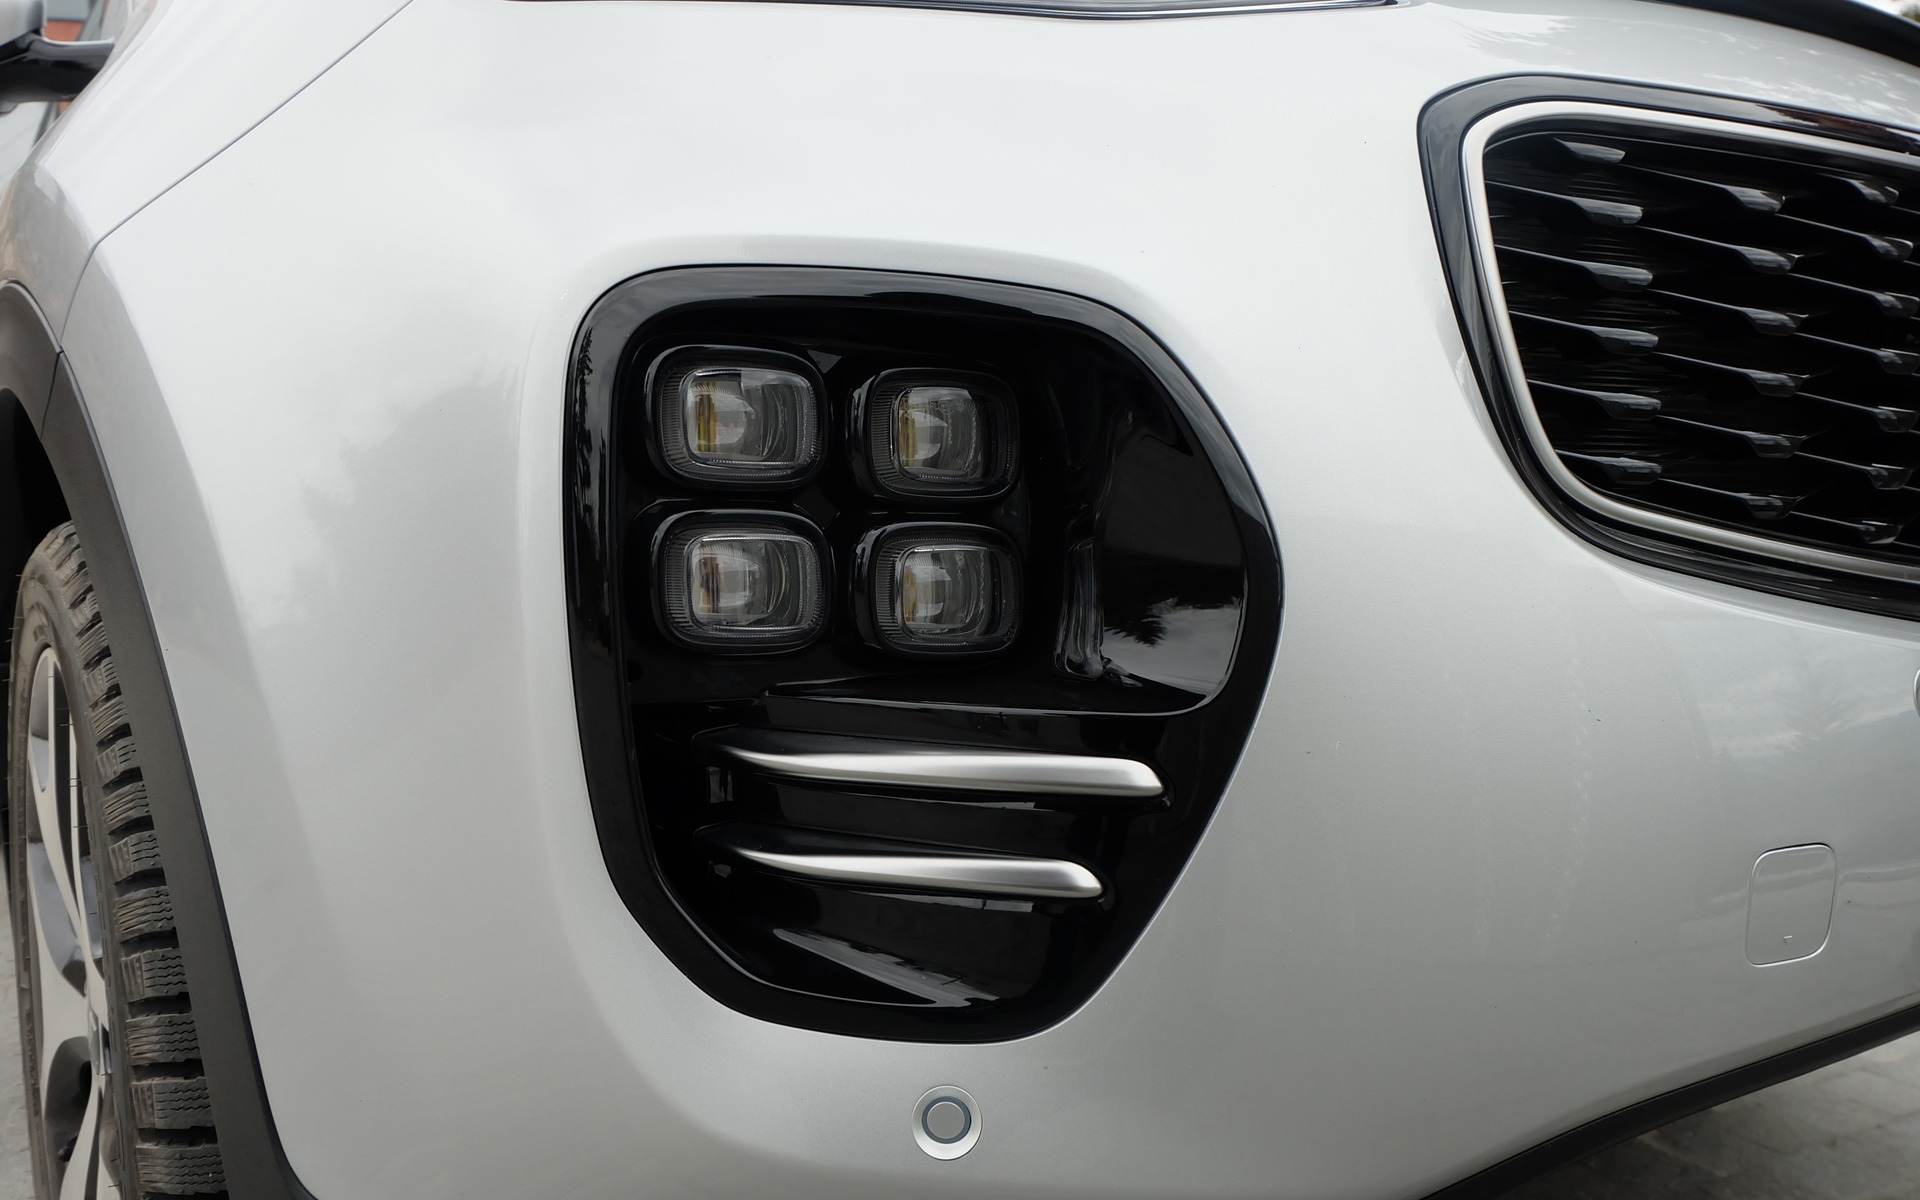 Le modèle SX a droit à des phares antibrouillard quadruples.